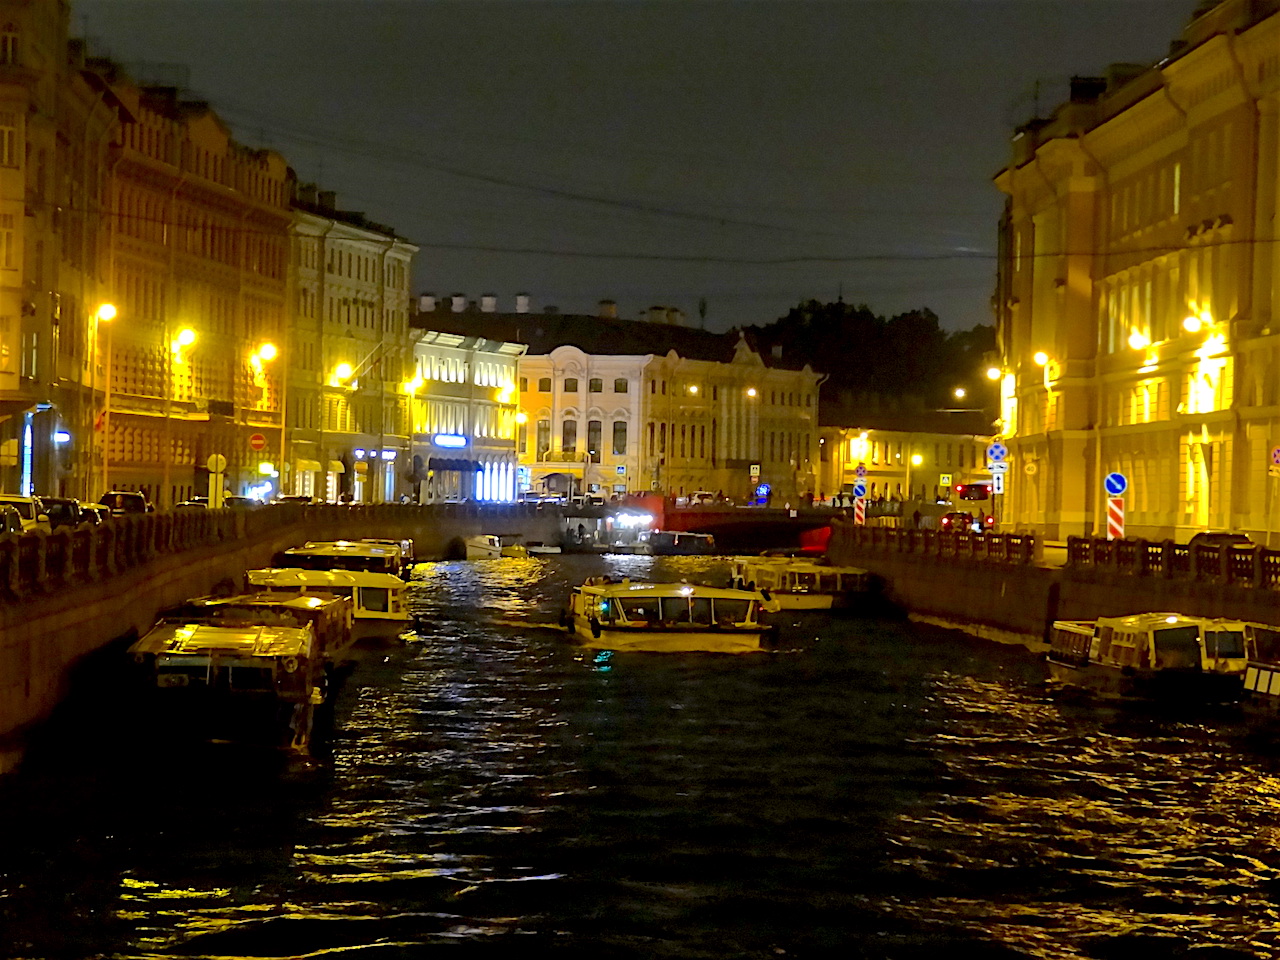 le palais stroganov sur le canal de la Moïka de nuit